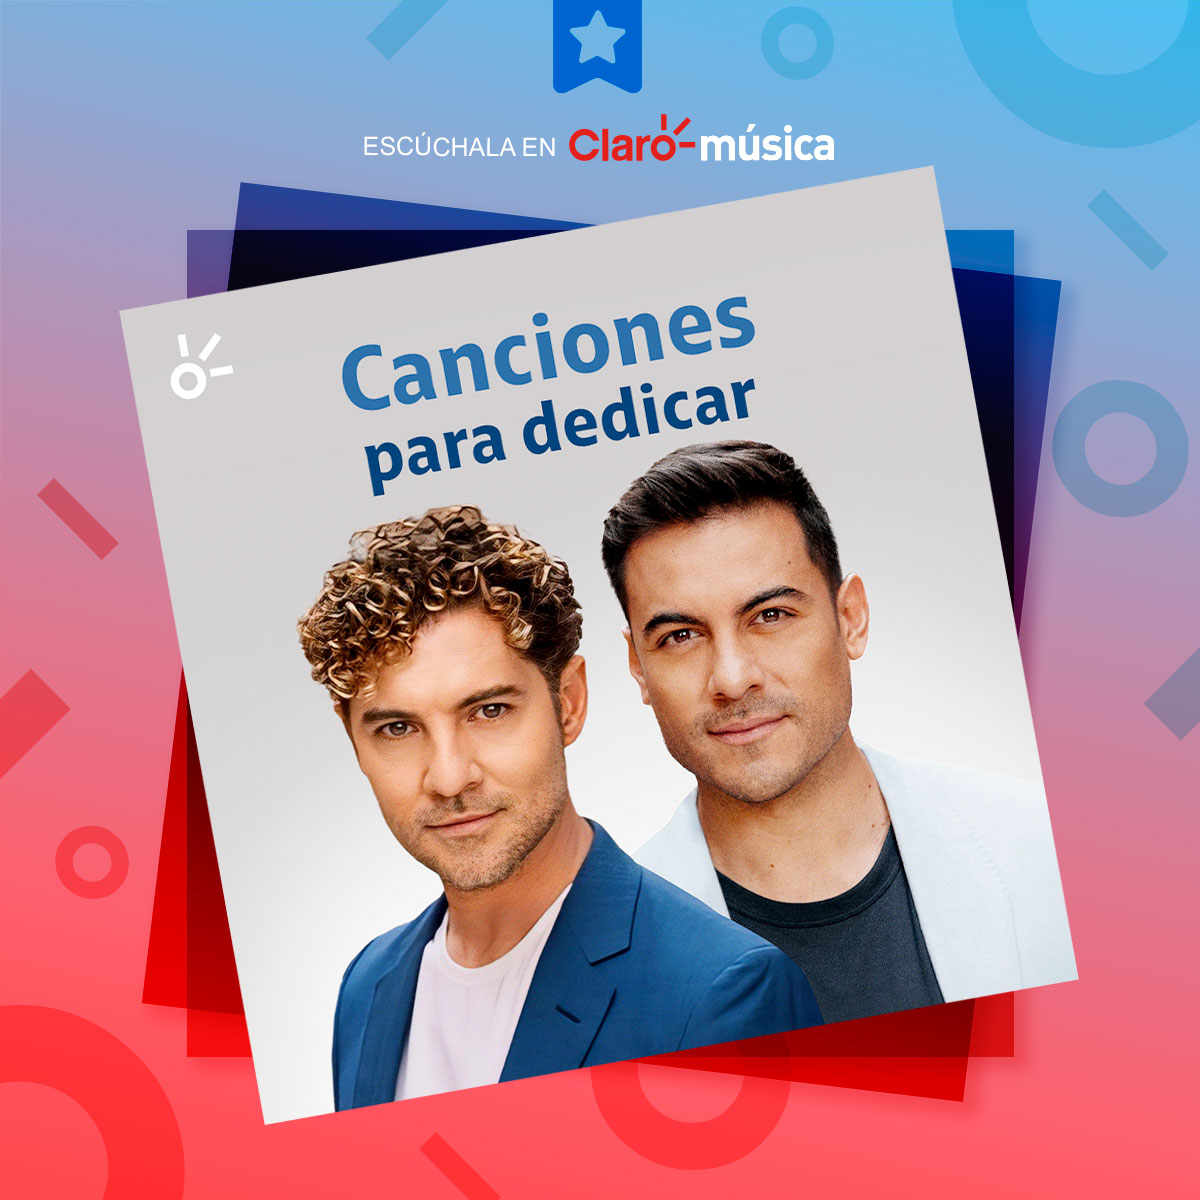 ¡Escucha y dedica #Ahora de @davidbisbal y @_CarlosRivera! 😍 Corre a nuestra playlist #CancionesParaDedicar en #Claromusica. 🎶 ow.ly/TFPQ50GMrAp #DavidBisbal #CarlosRivera #Playlist